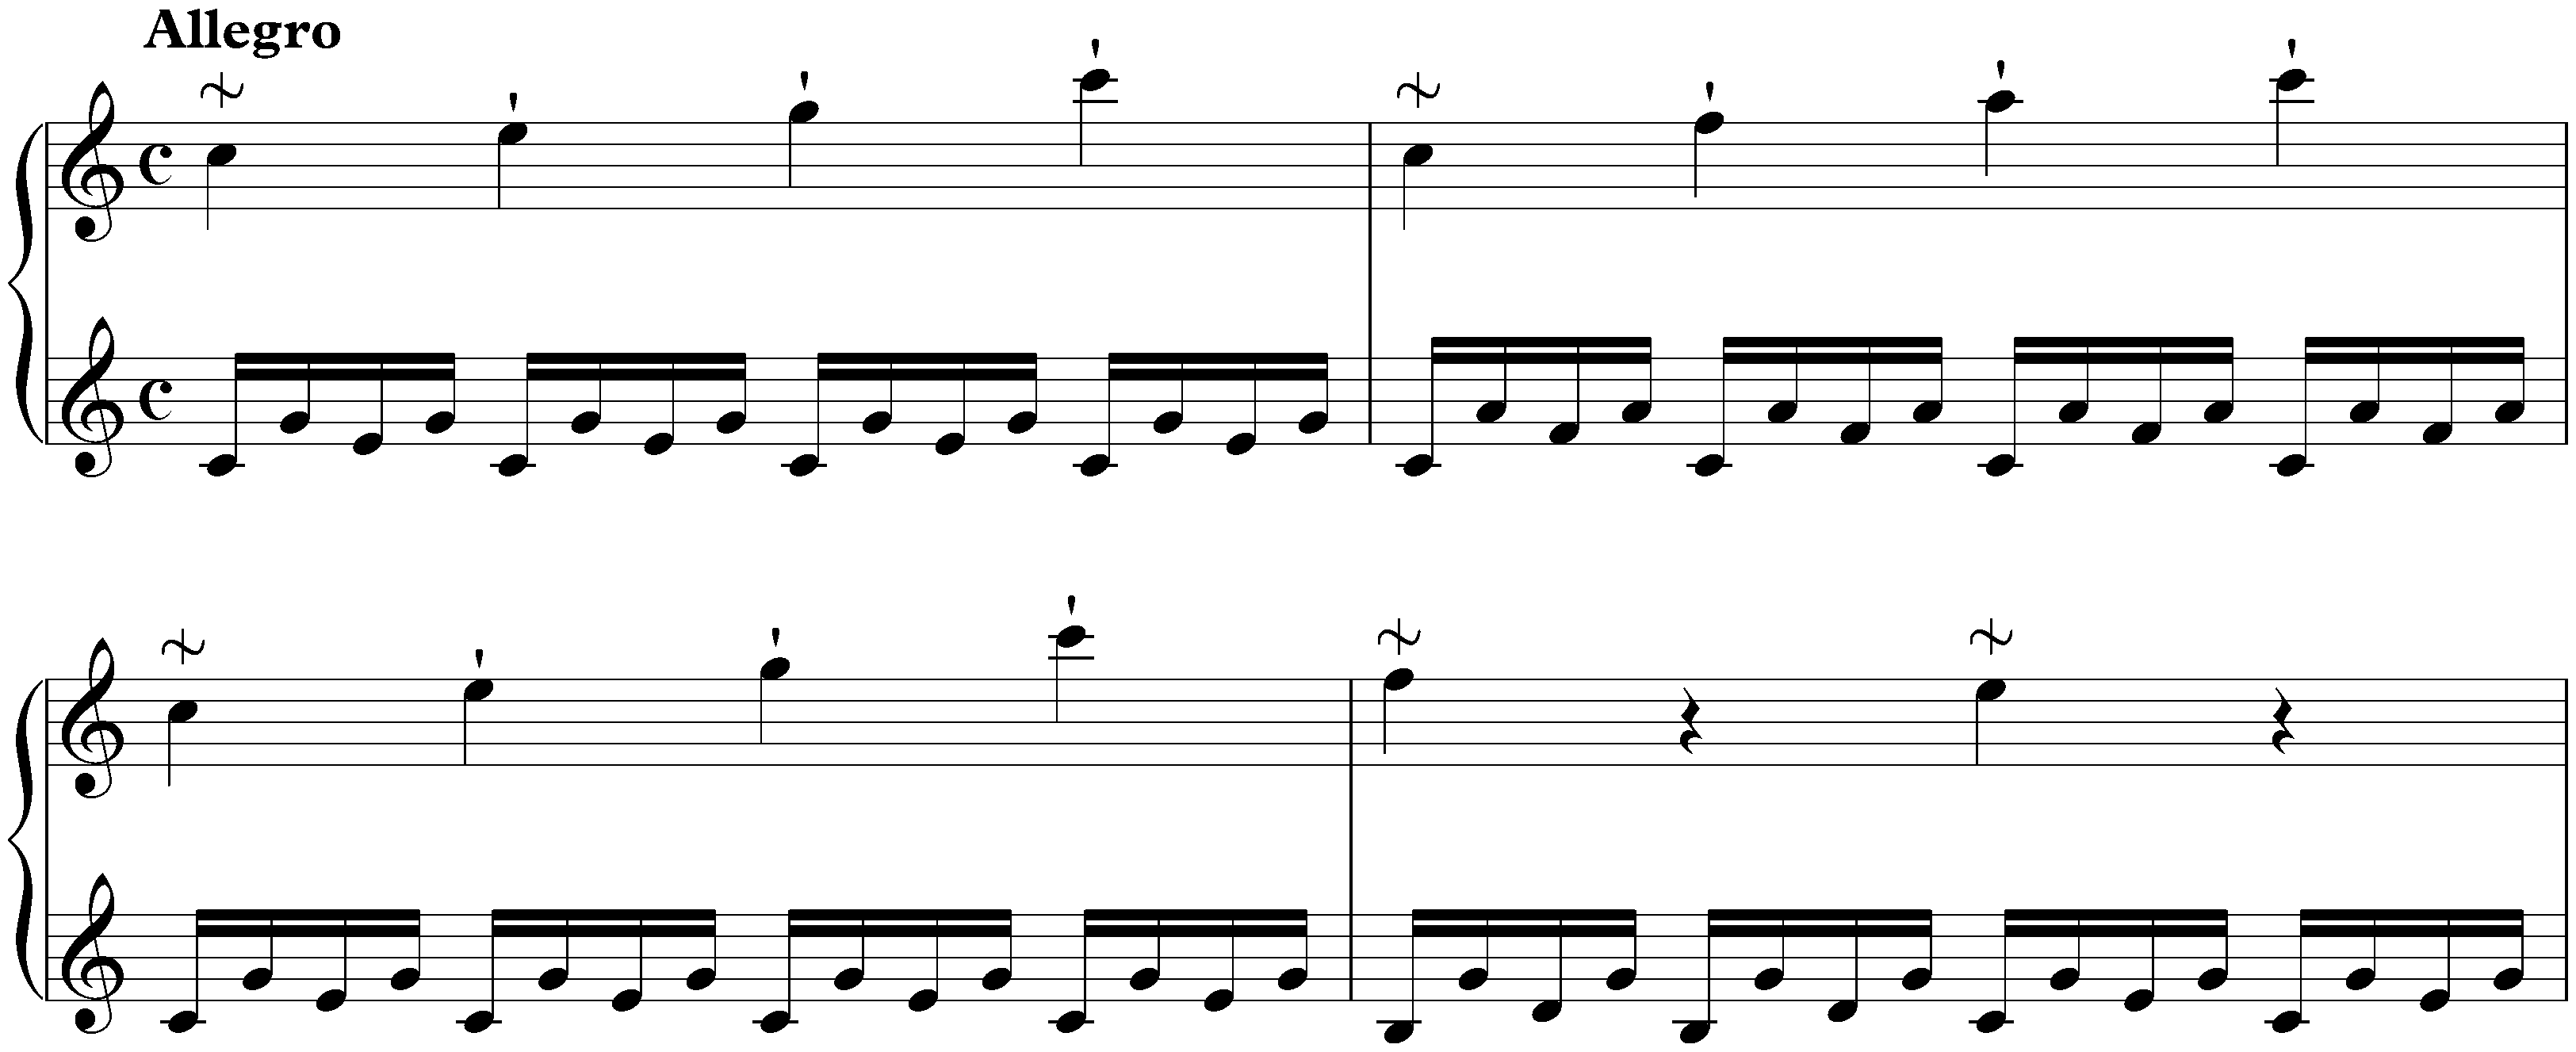 Sonata in C major, Hob. XVI:1; 1. Allegro